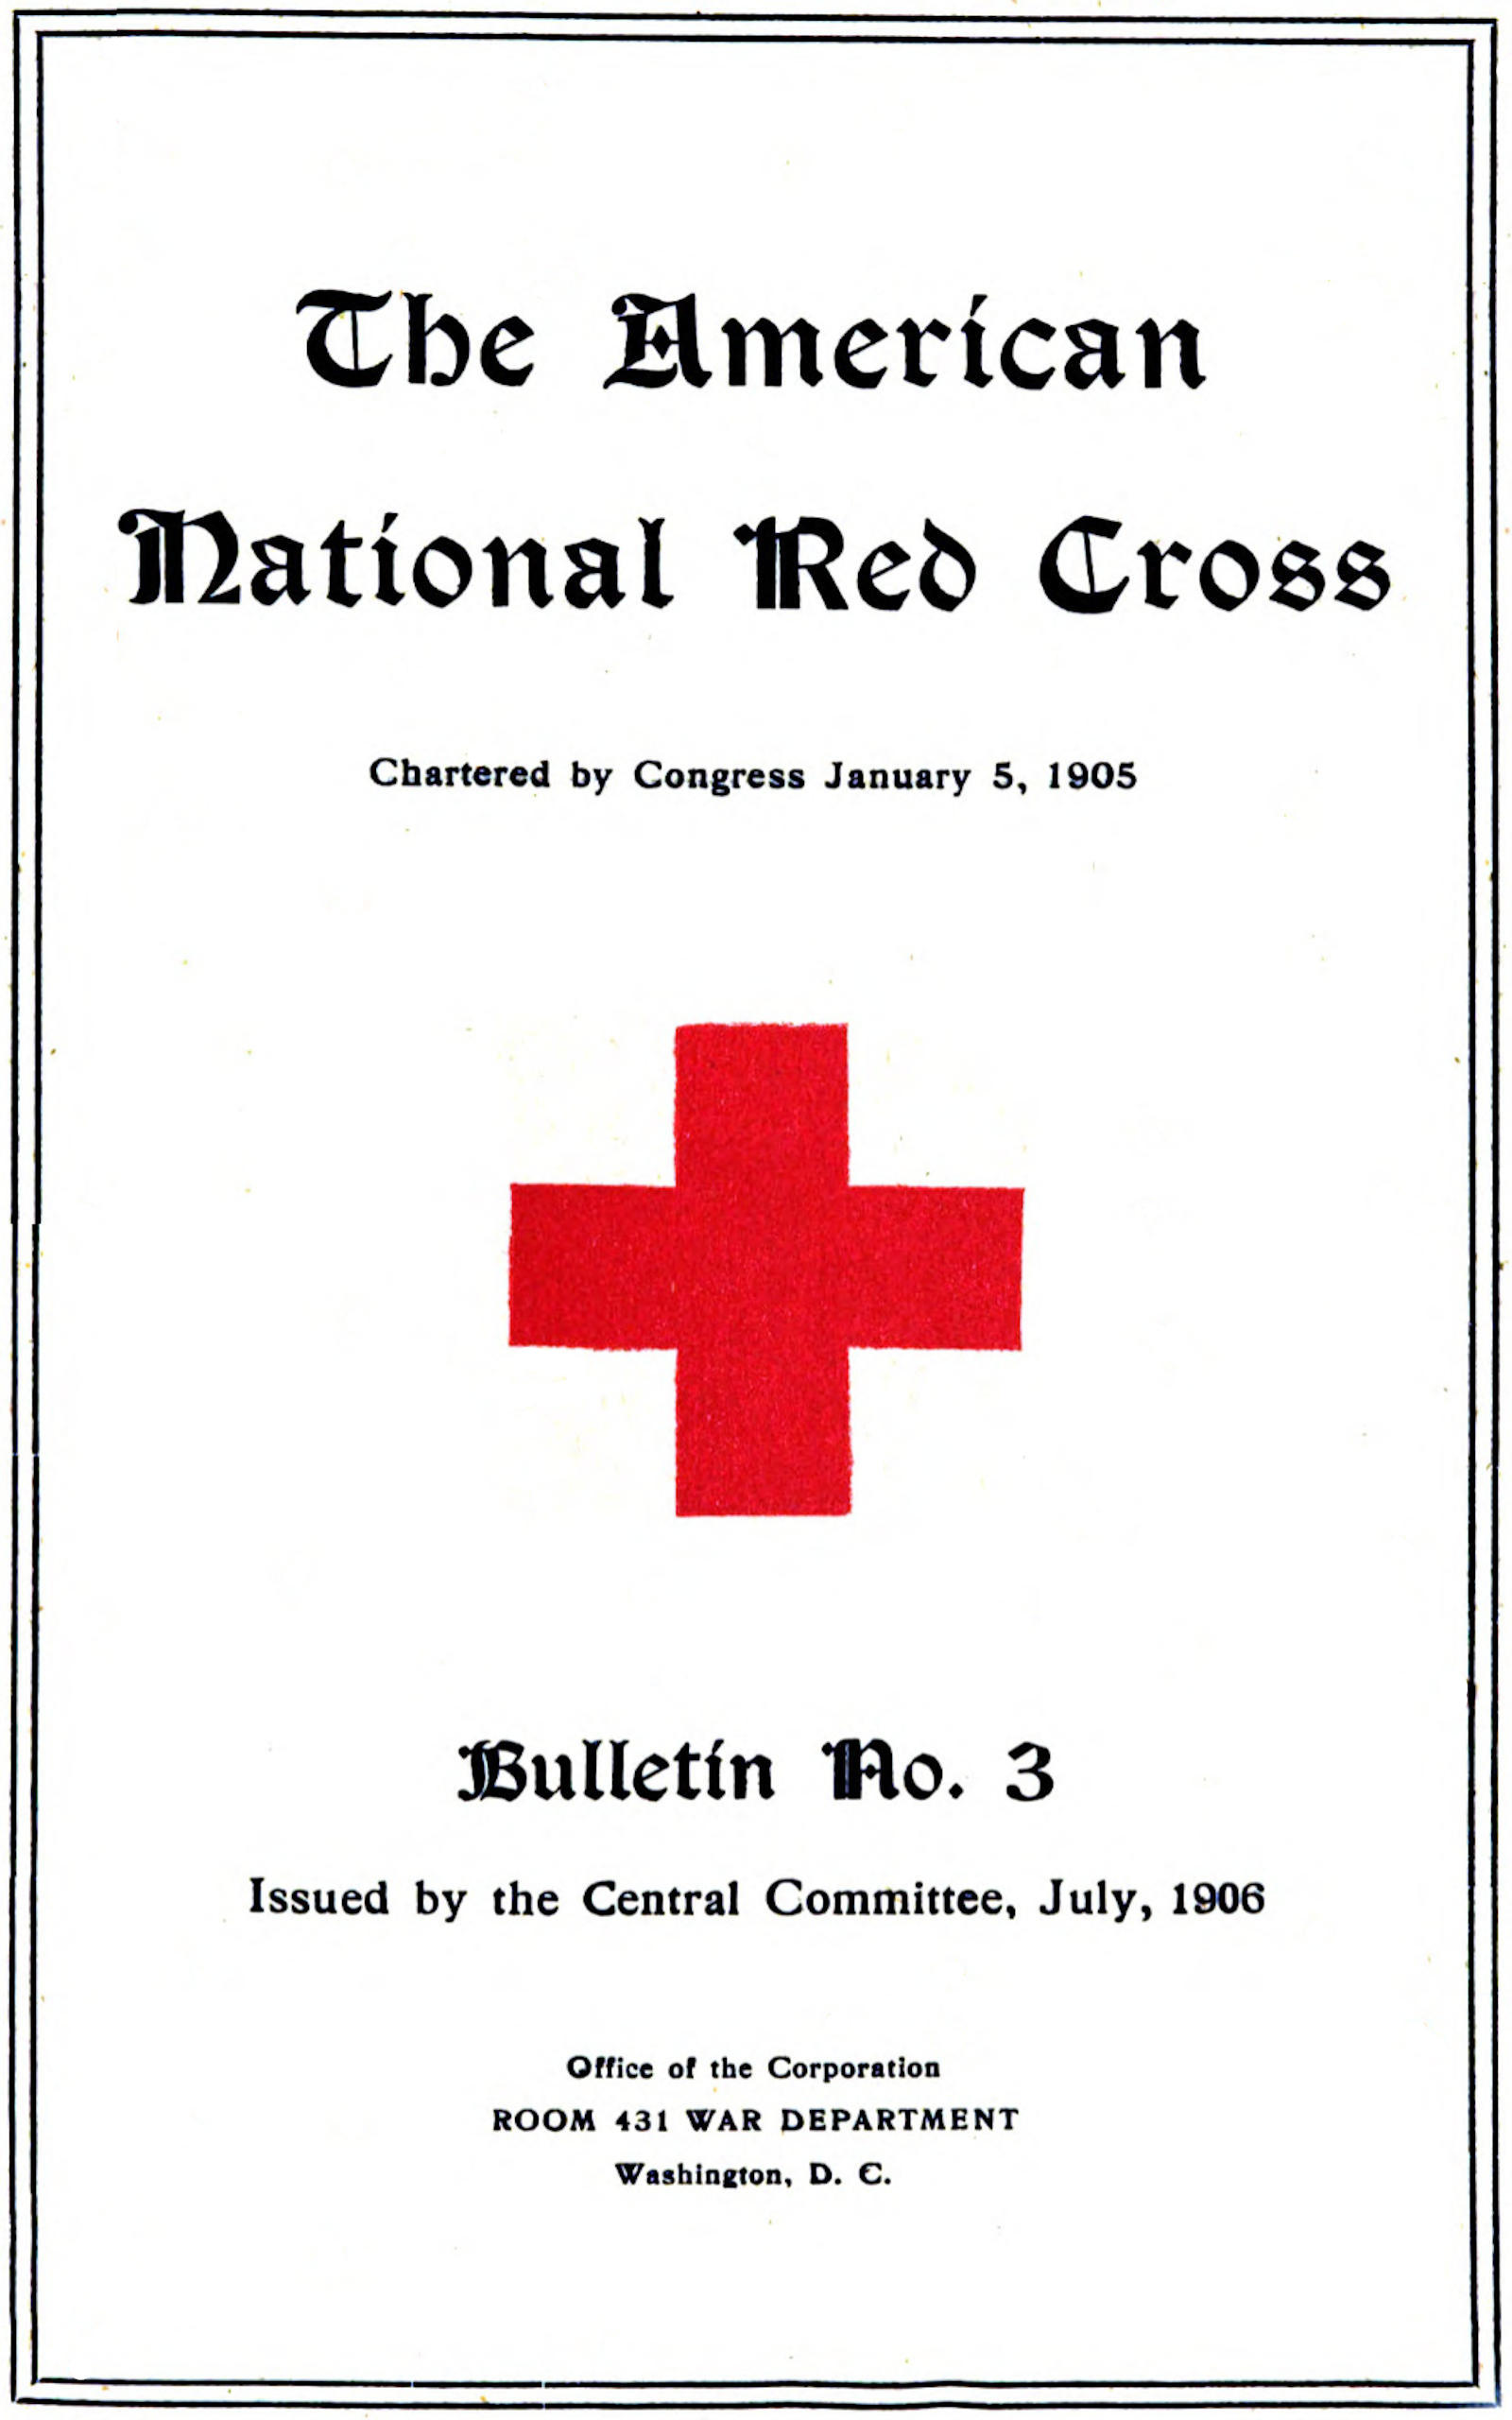 sengetøj omvendt have tillid The Project Gutenberg eBook of The American National Red Cross Bulletin  (Vol. I, No. 3), by The American National Red Cross.